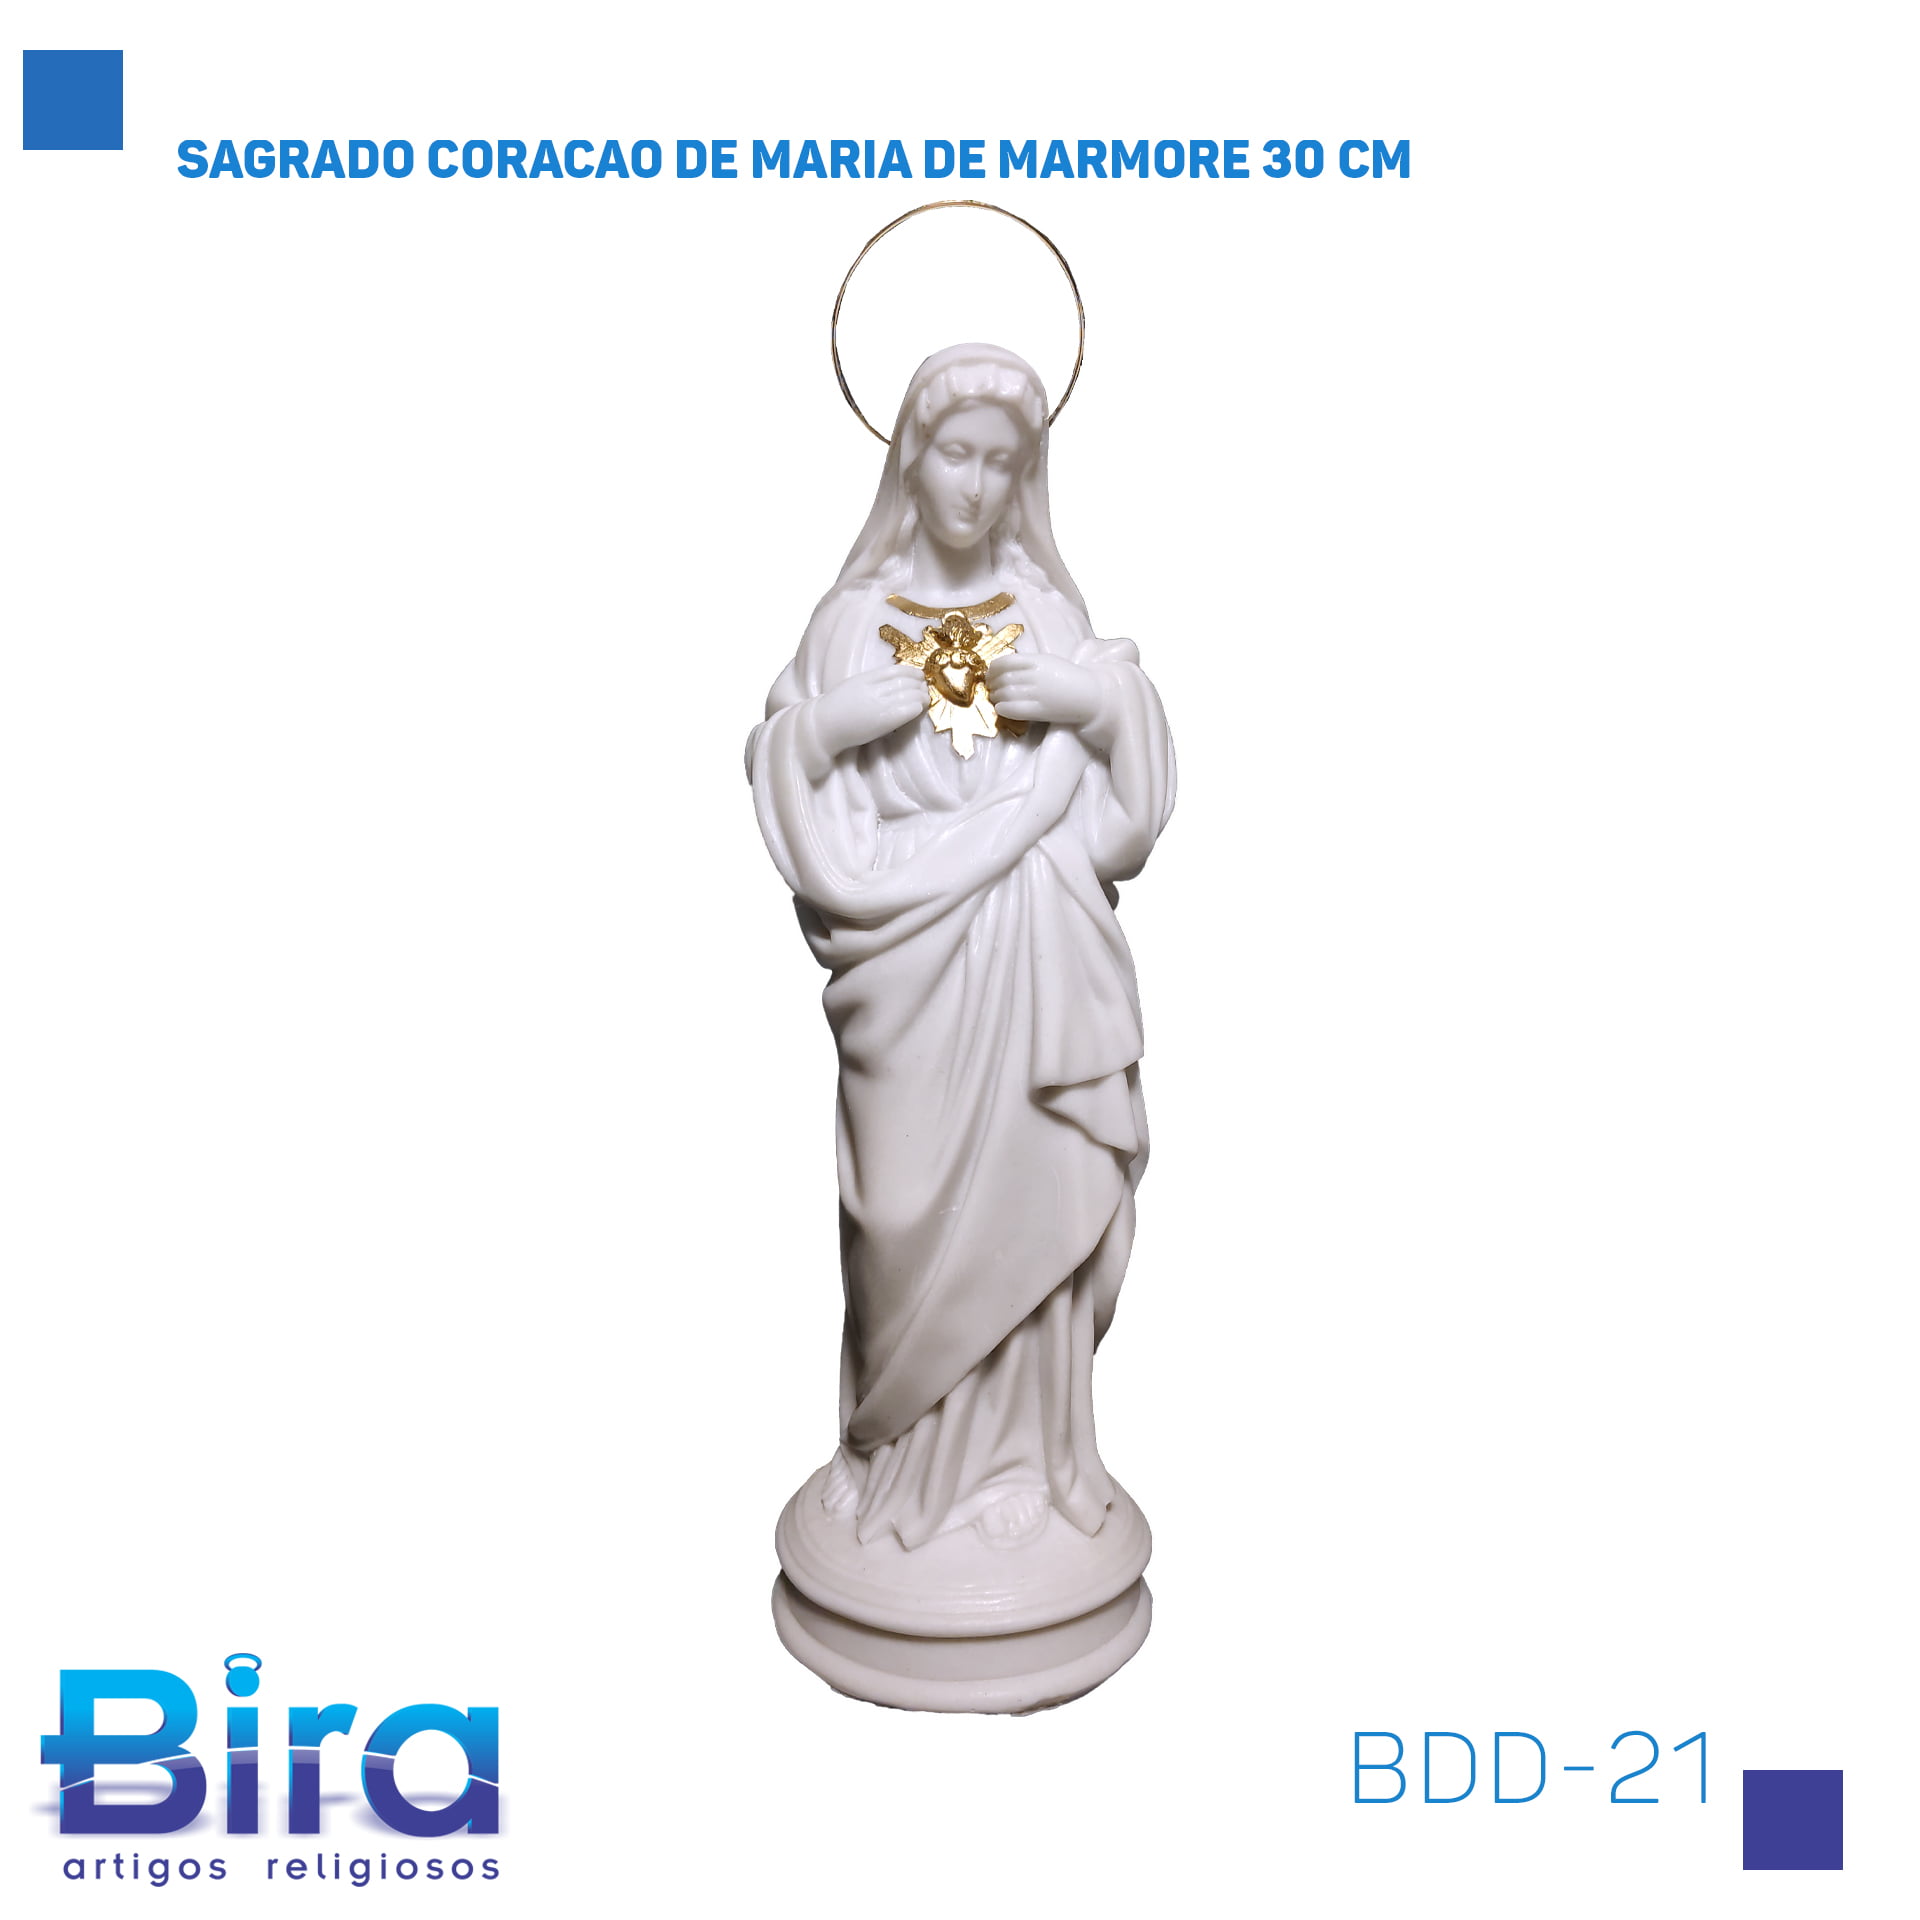 Bira Artigos Religiosos - SAGRADO CORACAO DE MARIA DE MARMORE 30 CM Cód.: BDD-21